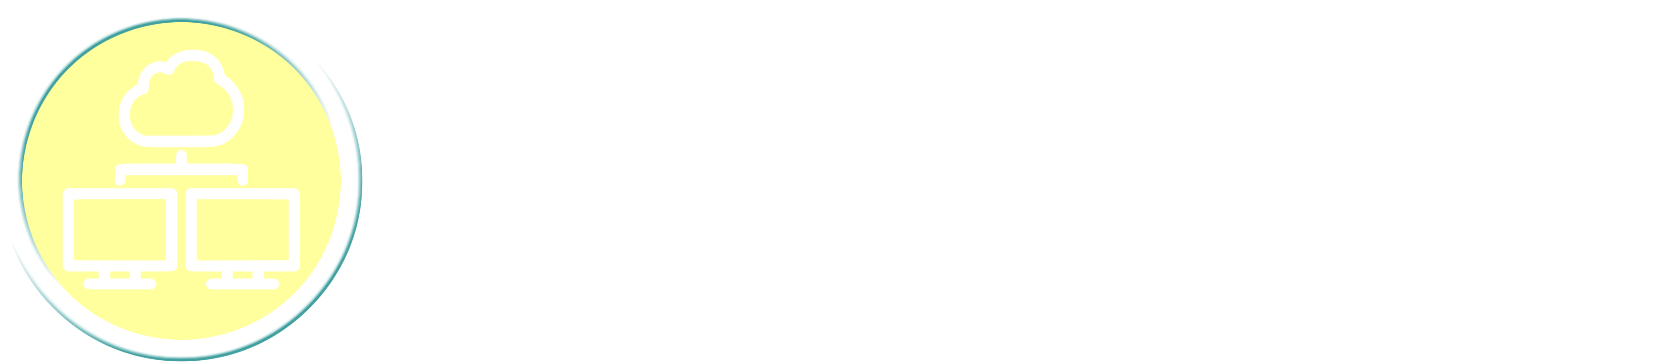 Logo Intranet Institucional